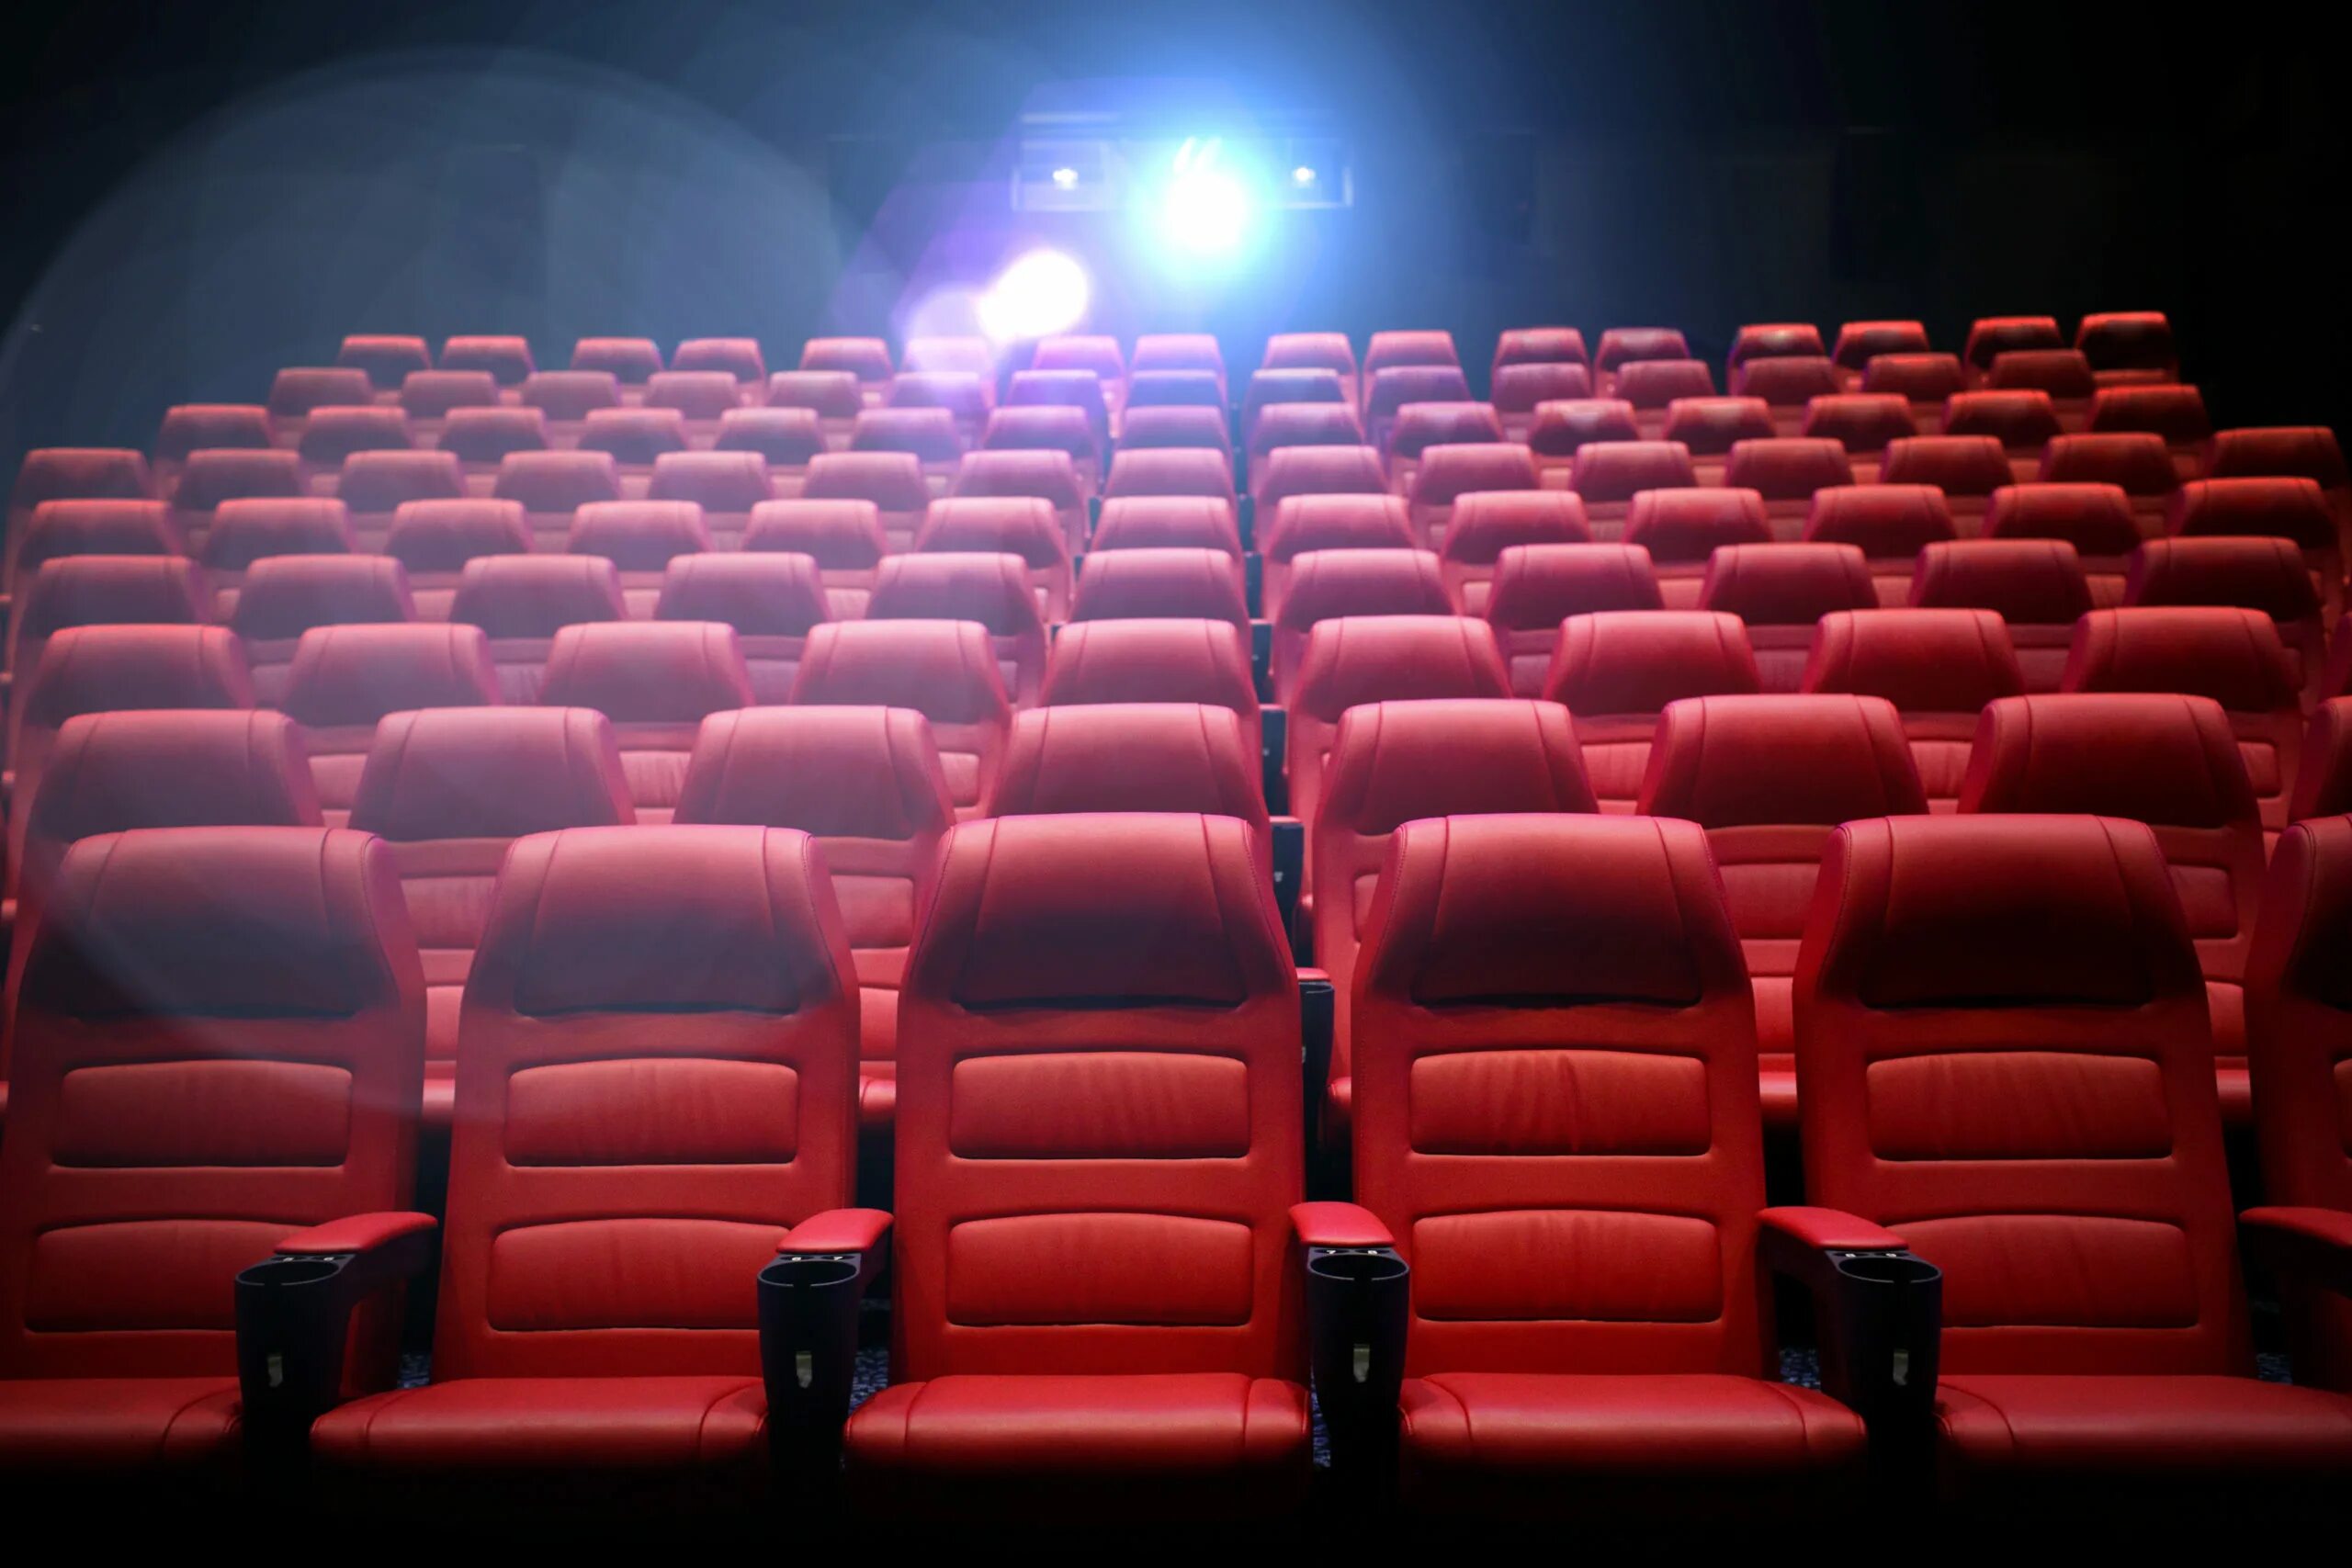 Кресло для кинозала. Пустые кресла в кинотеатре. Зрительный зал кинотеатра. Сиденья в кинотеатре фон. Сиденья в кинотеатре